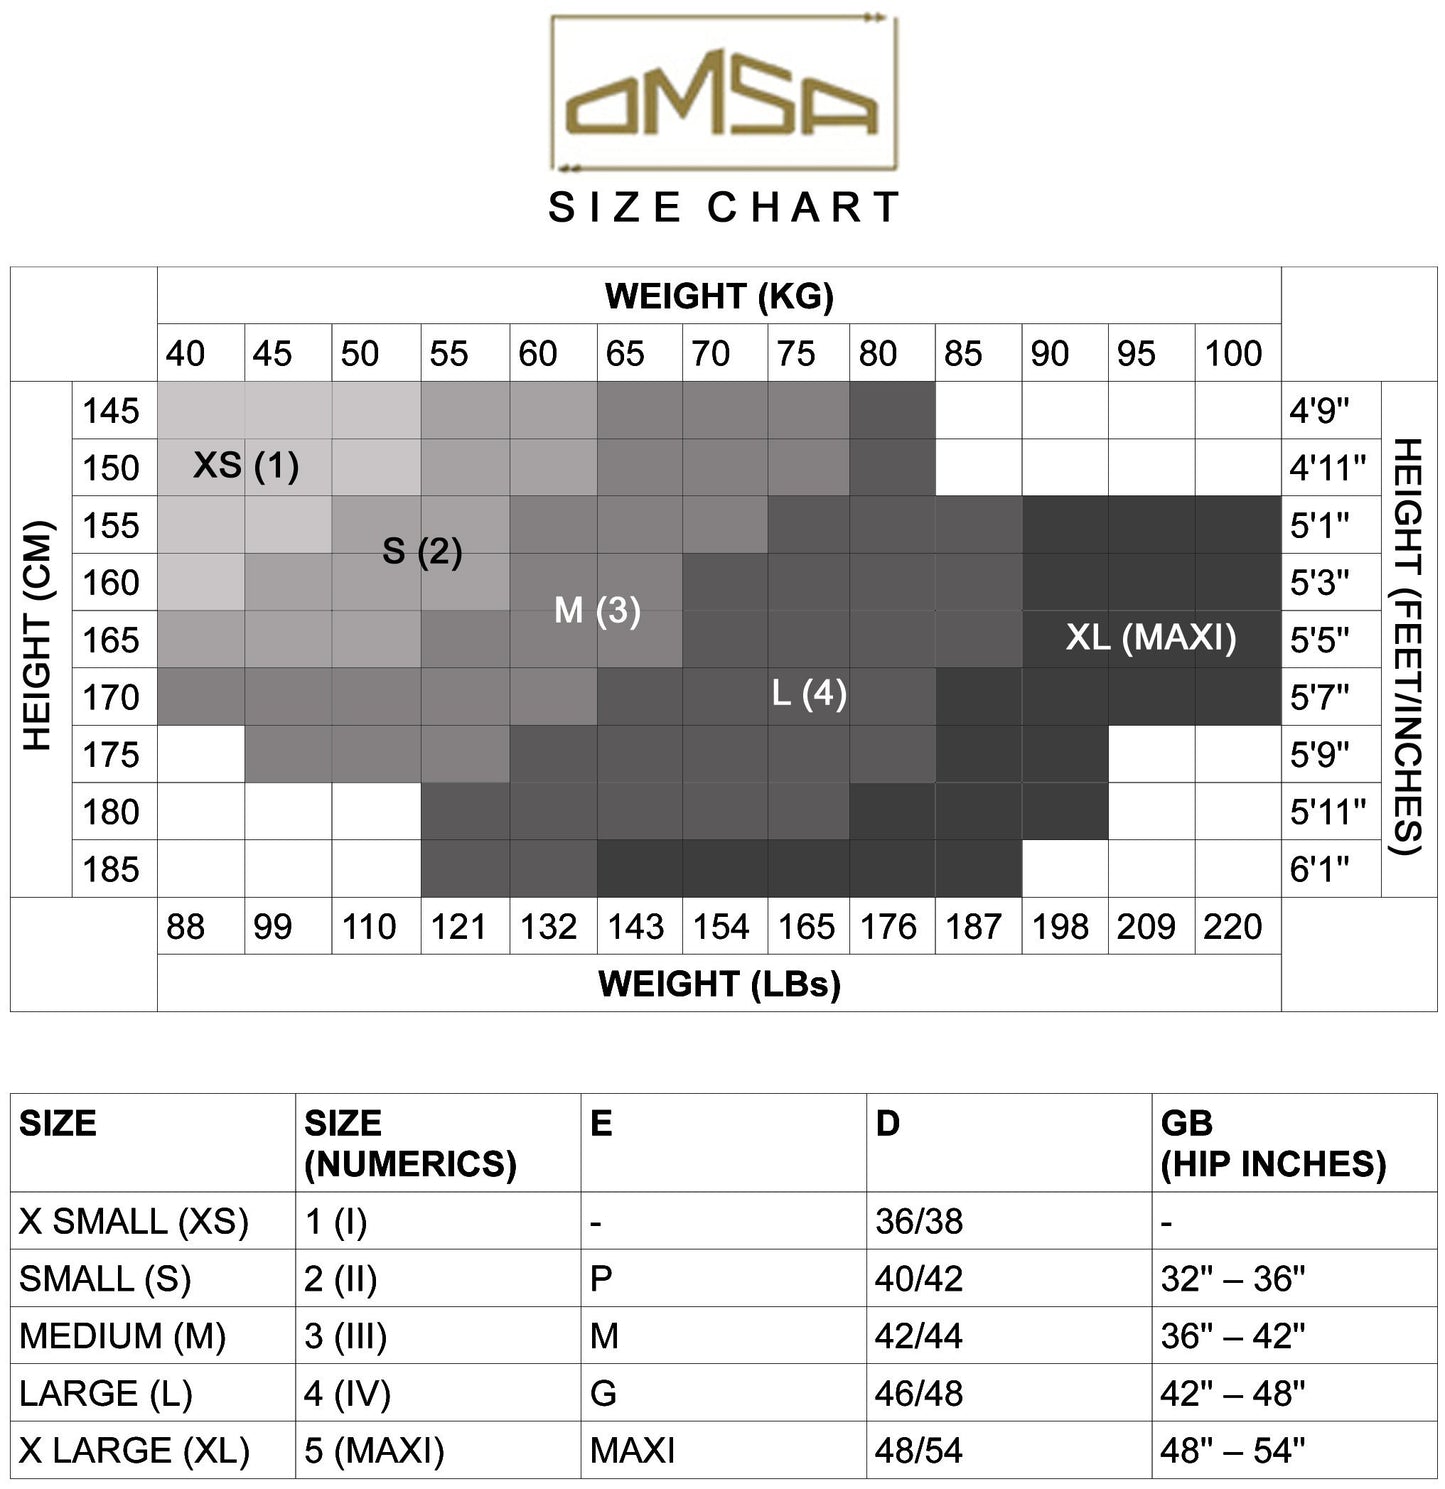 Omsa size chart